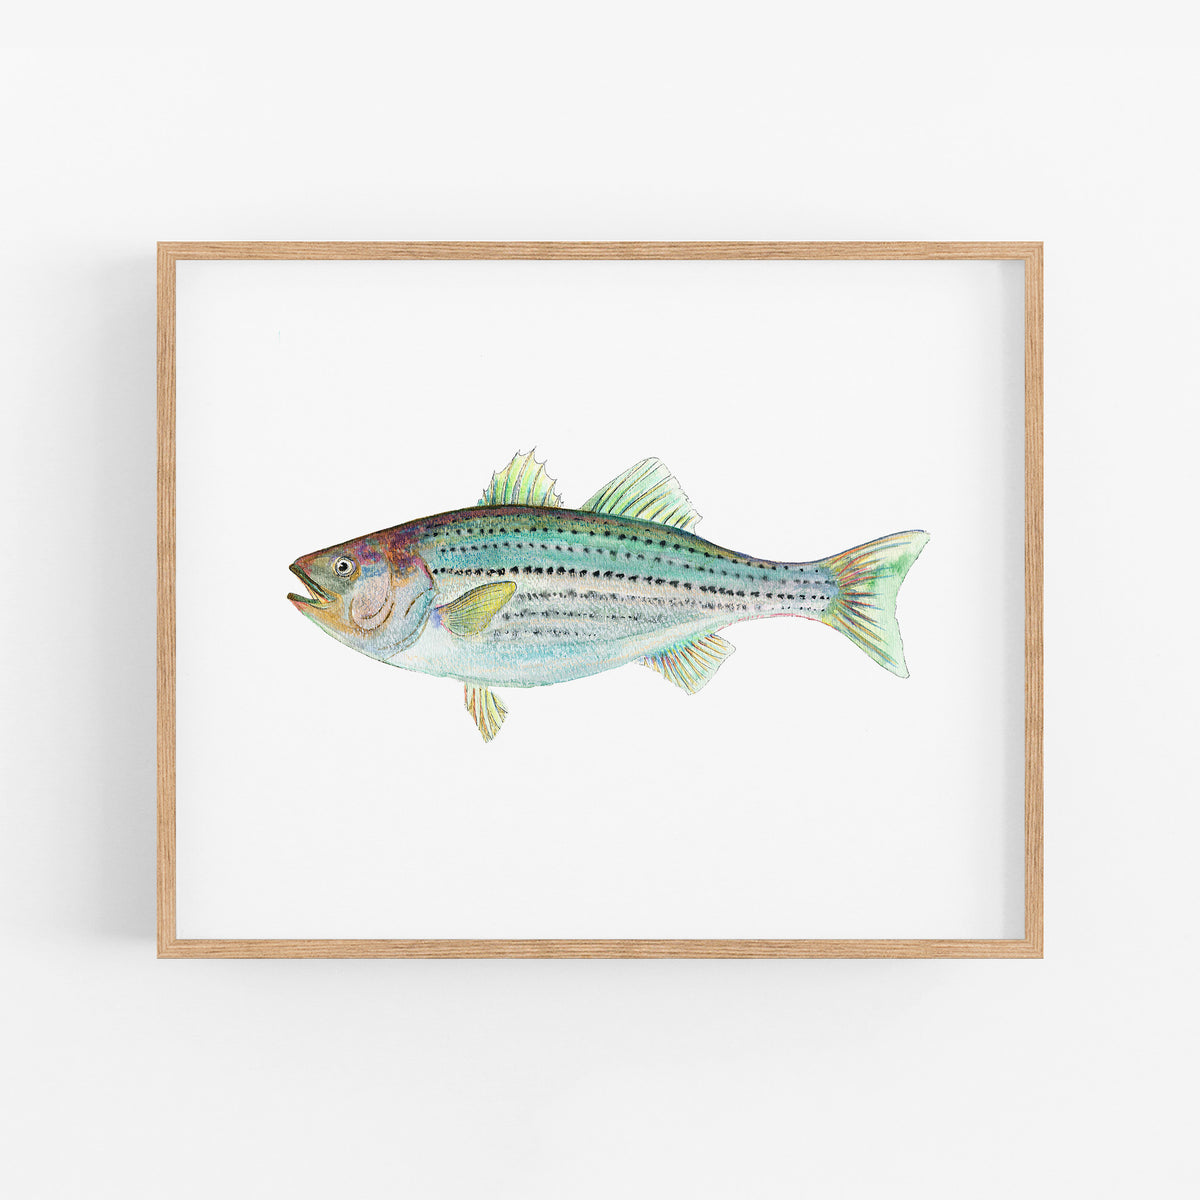 Watercolor Fish Paintings